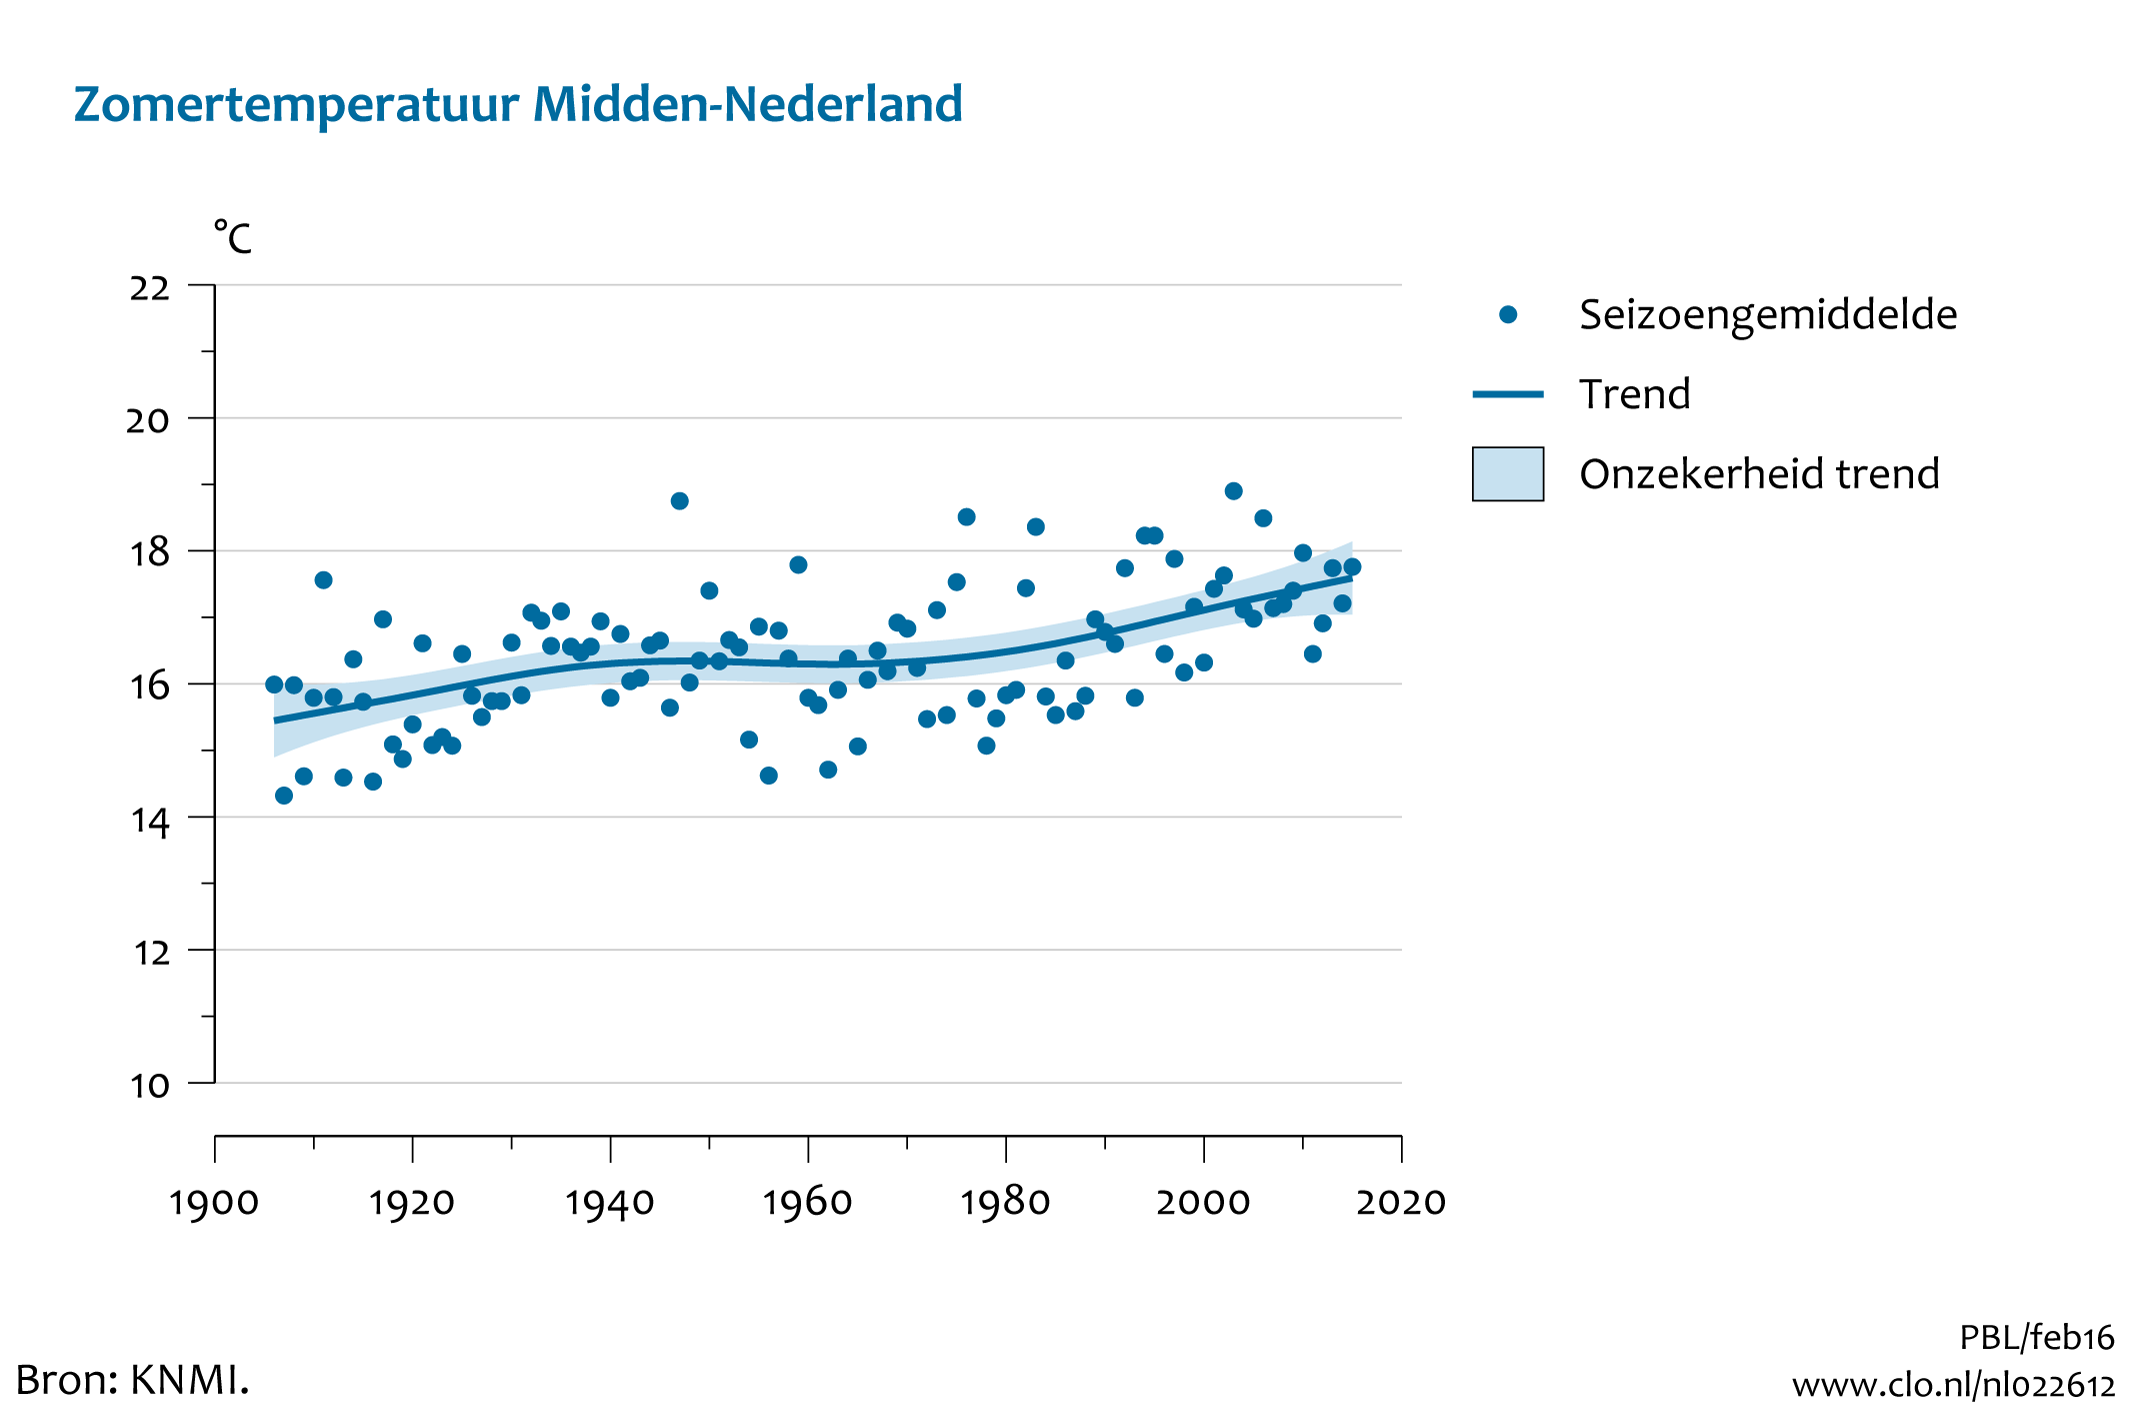 Figuur zomer temperatuur midden Nederland. In de rest van de tekst wordt deze figuur uitgebreider uitgelegd.